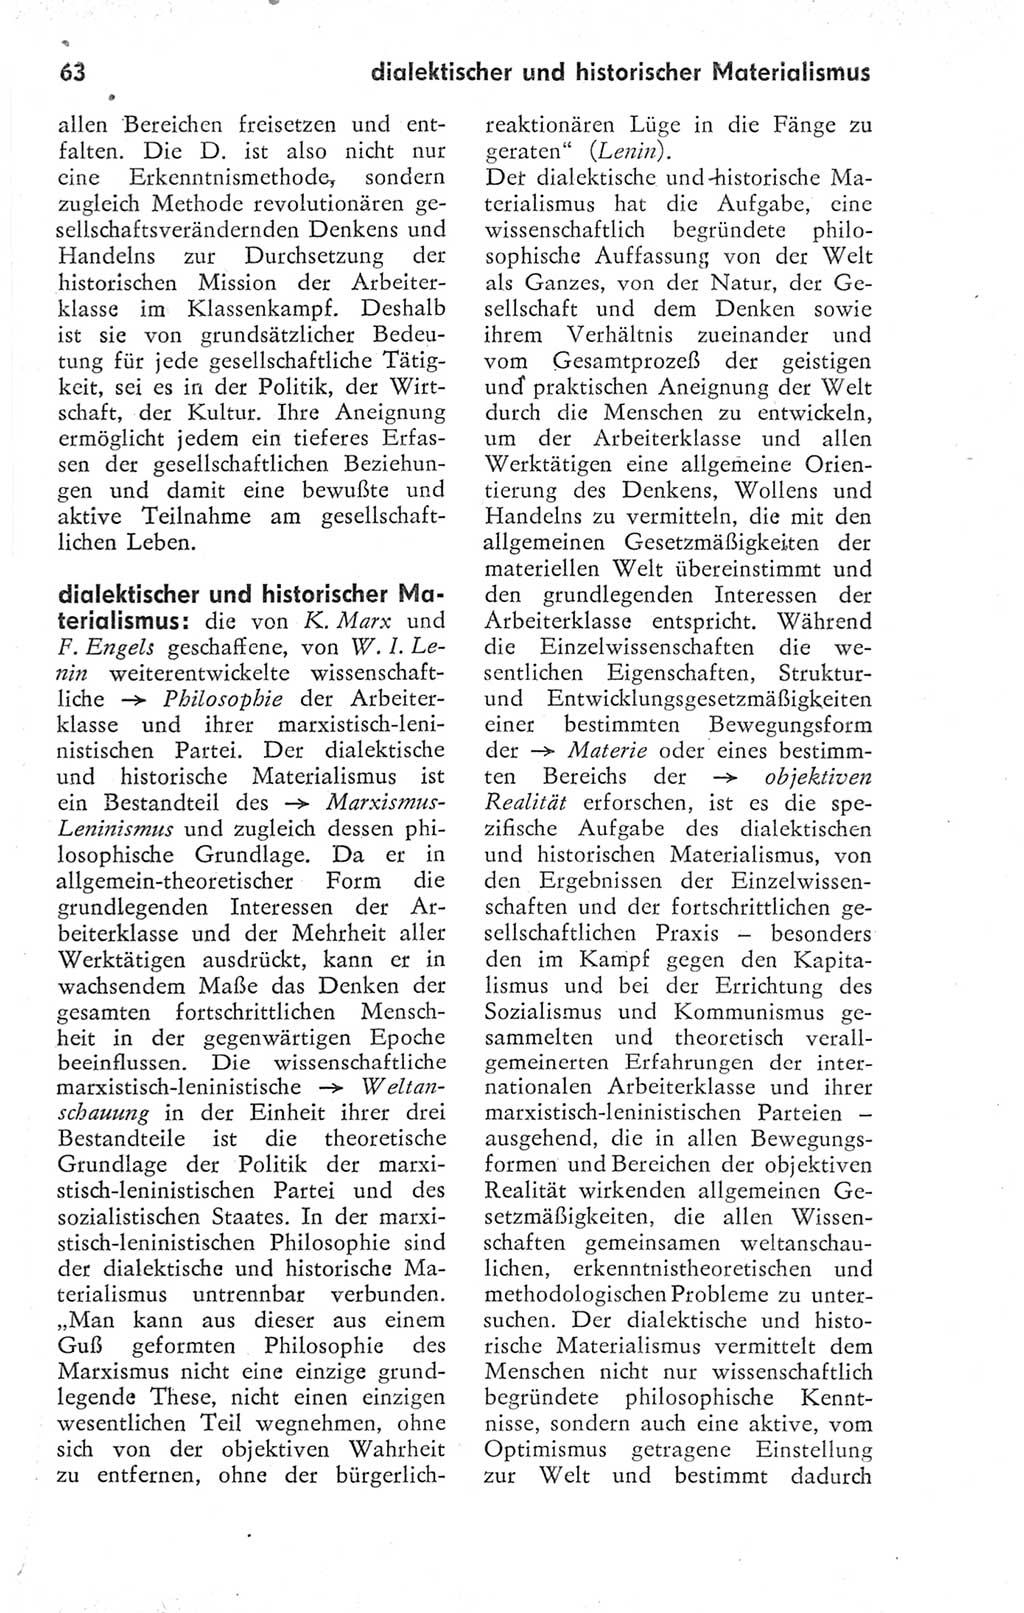 Kleines Wörterbuch der marxistisch-leninistischen Philosophie [Deutsche Demokratische Republik (DDR)] 1974, Seite 63 (Kl. Wb. ML Phil. DDR 1974, S. 63)